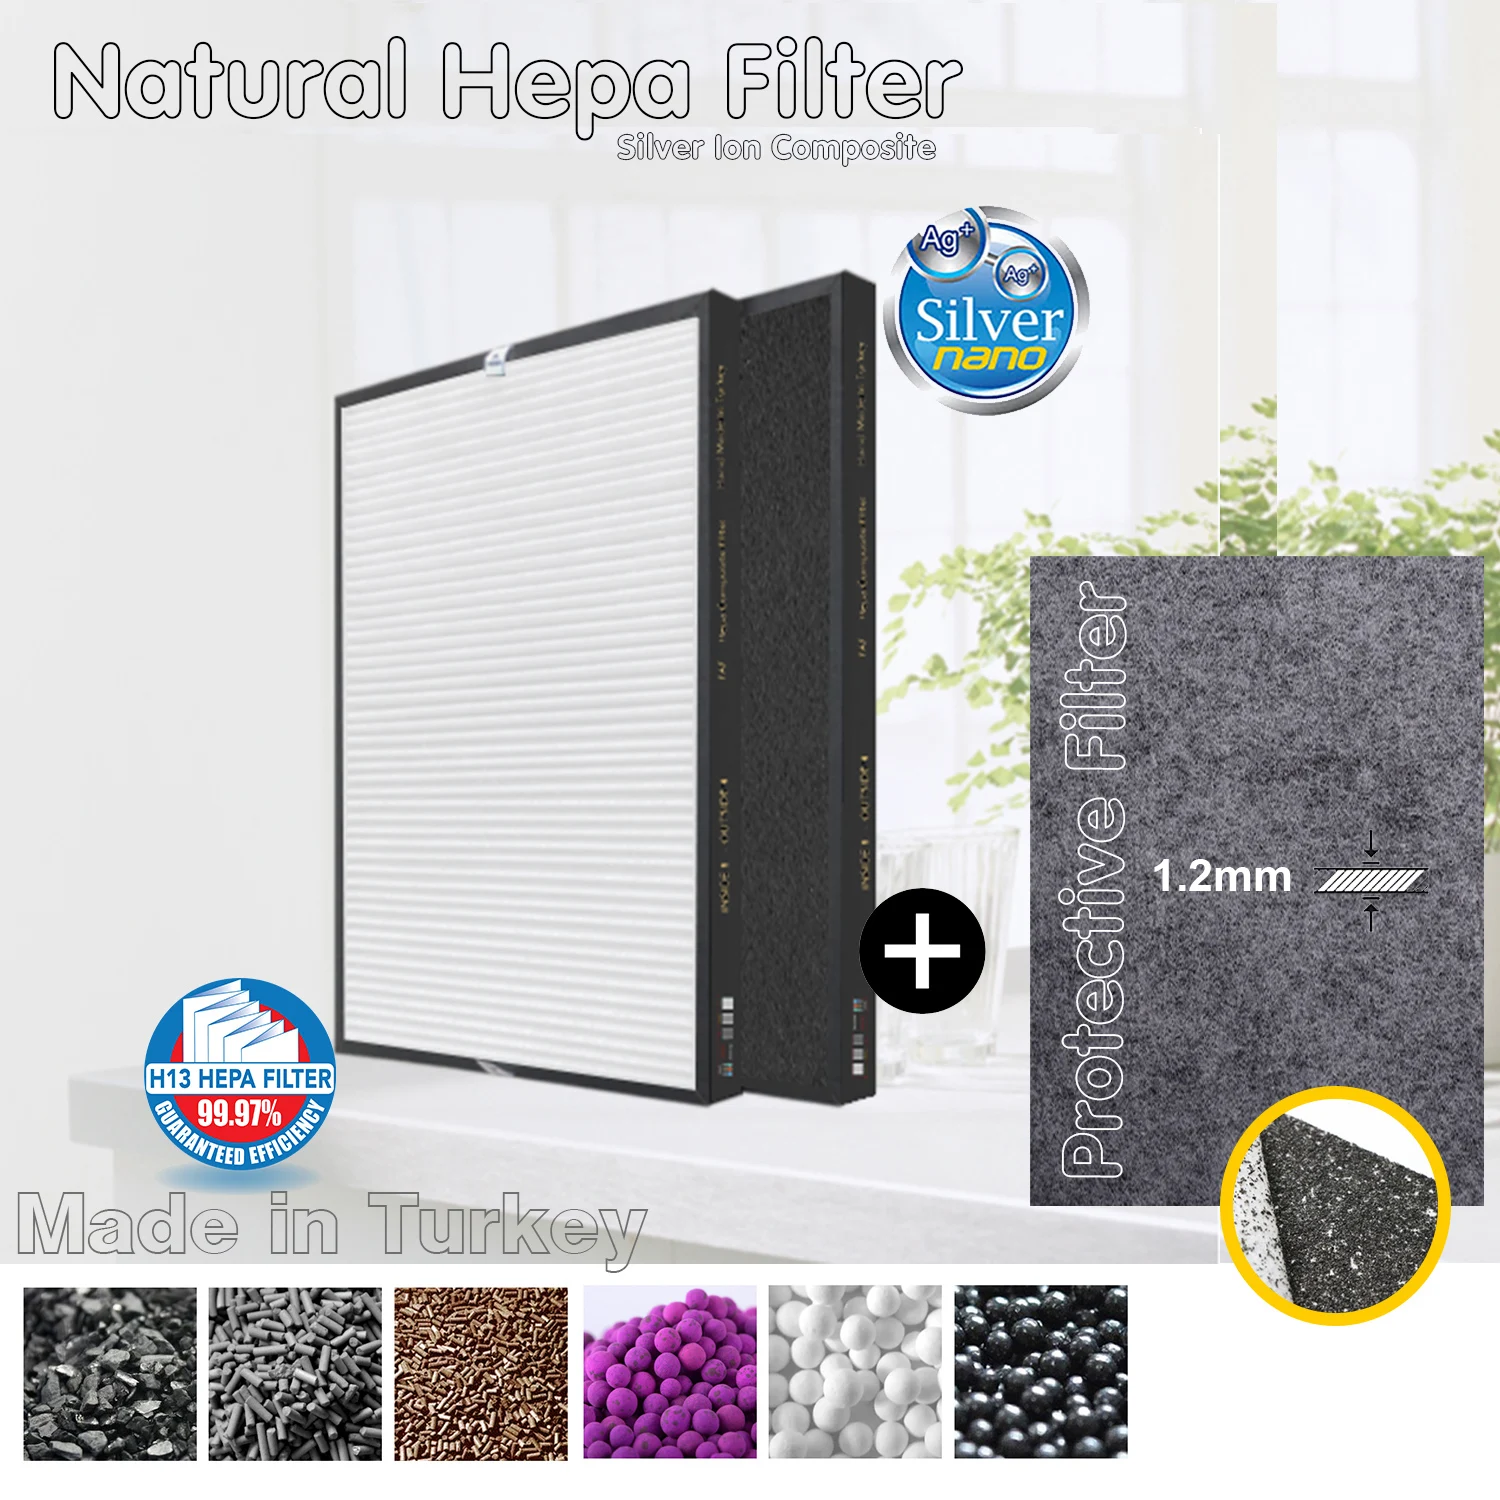 Многофункциональный фильтр HEPA+активированный уголь, размером 340*295*40мм, индивидуального производства, для очистки и защиты воздуха.